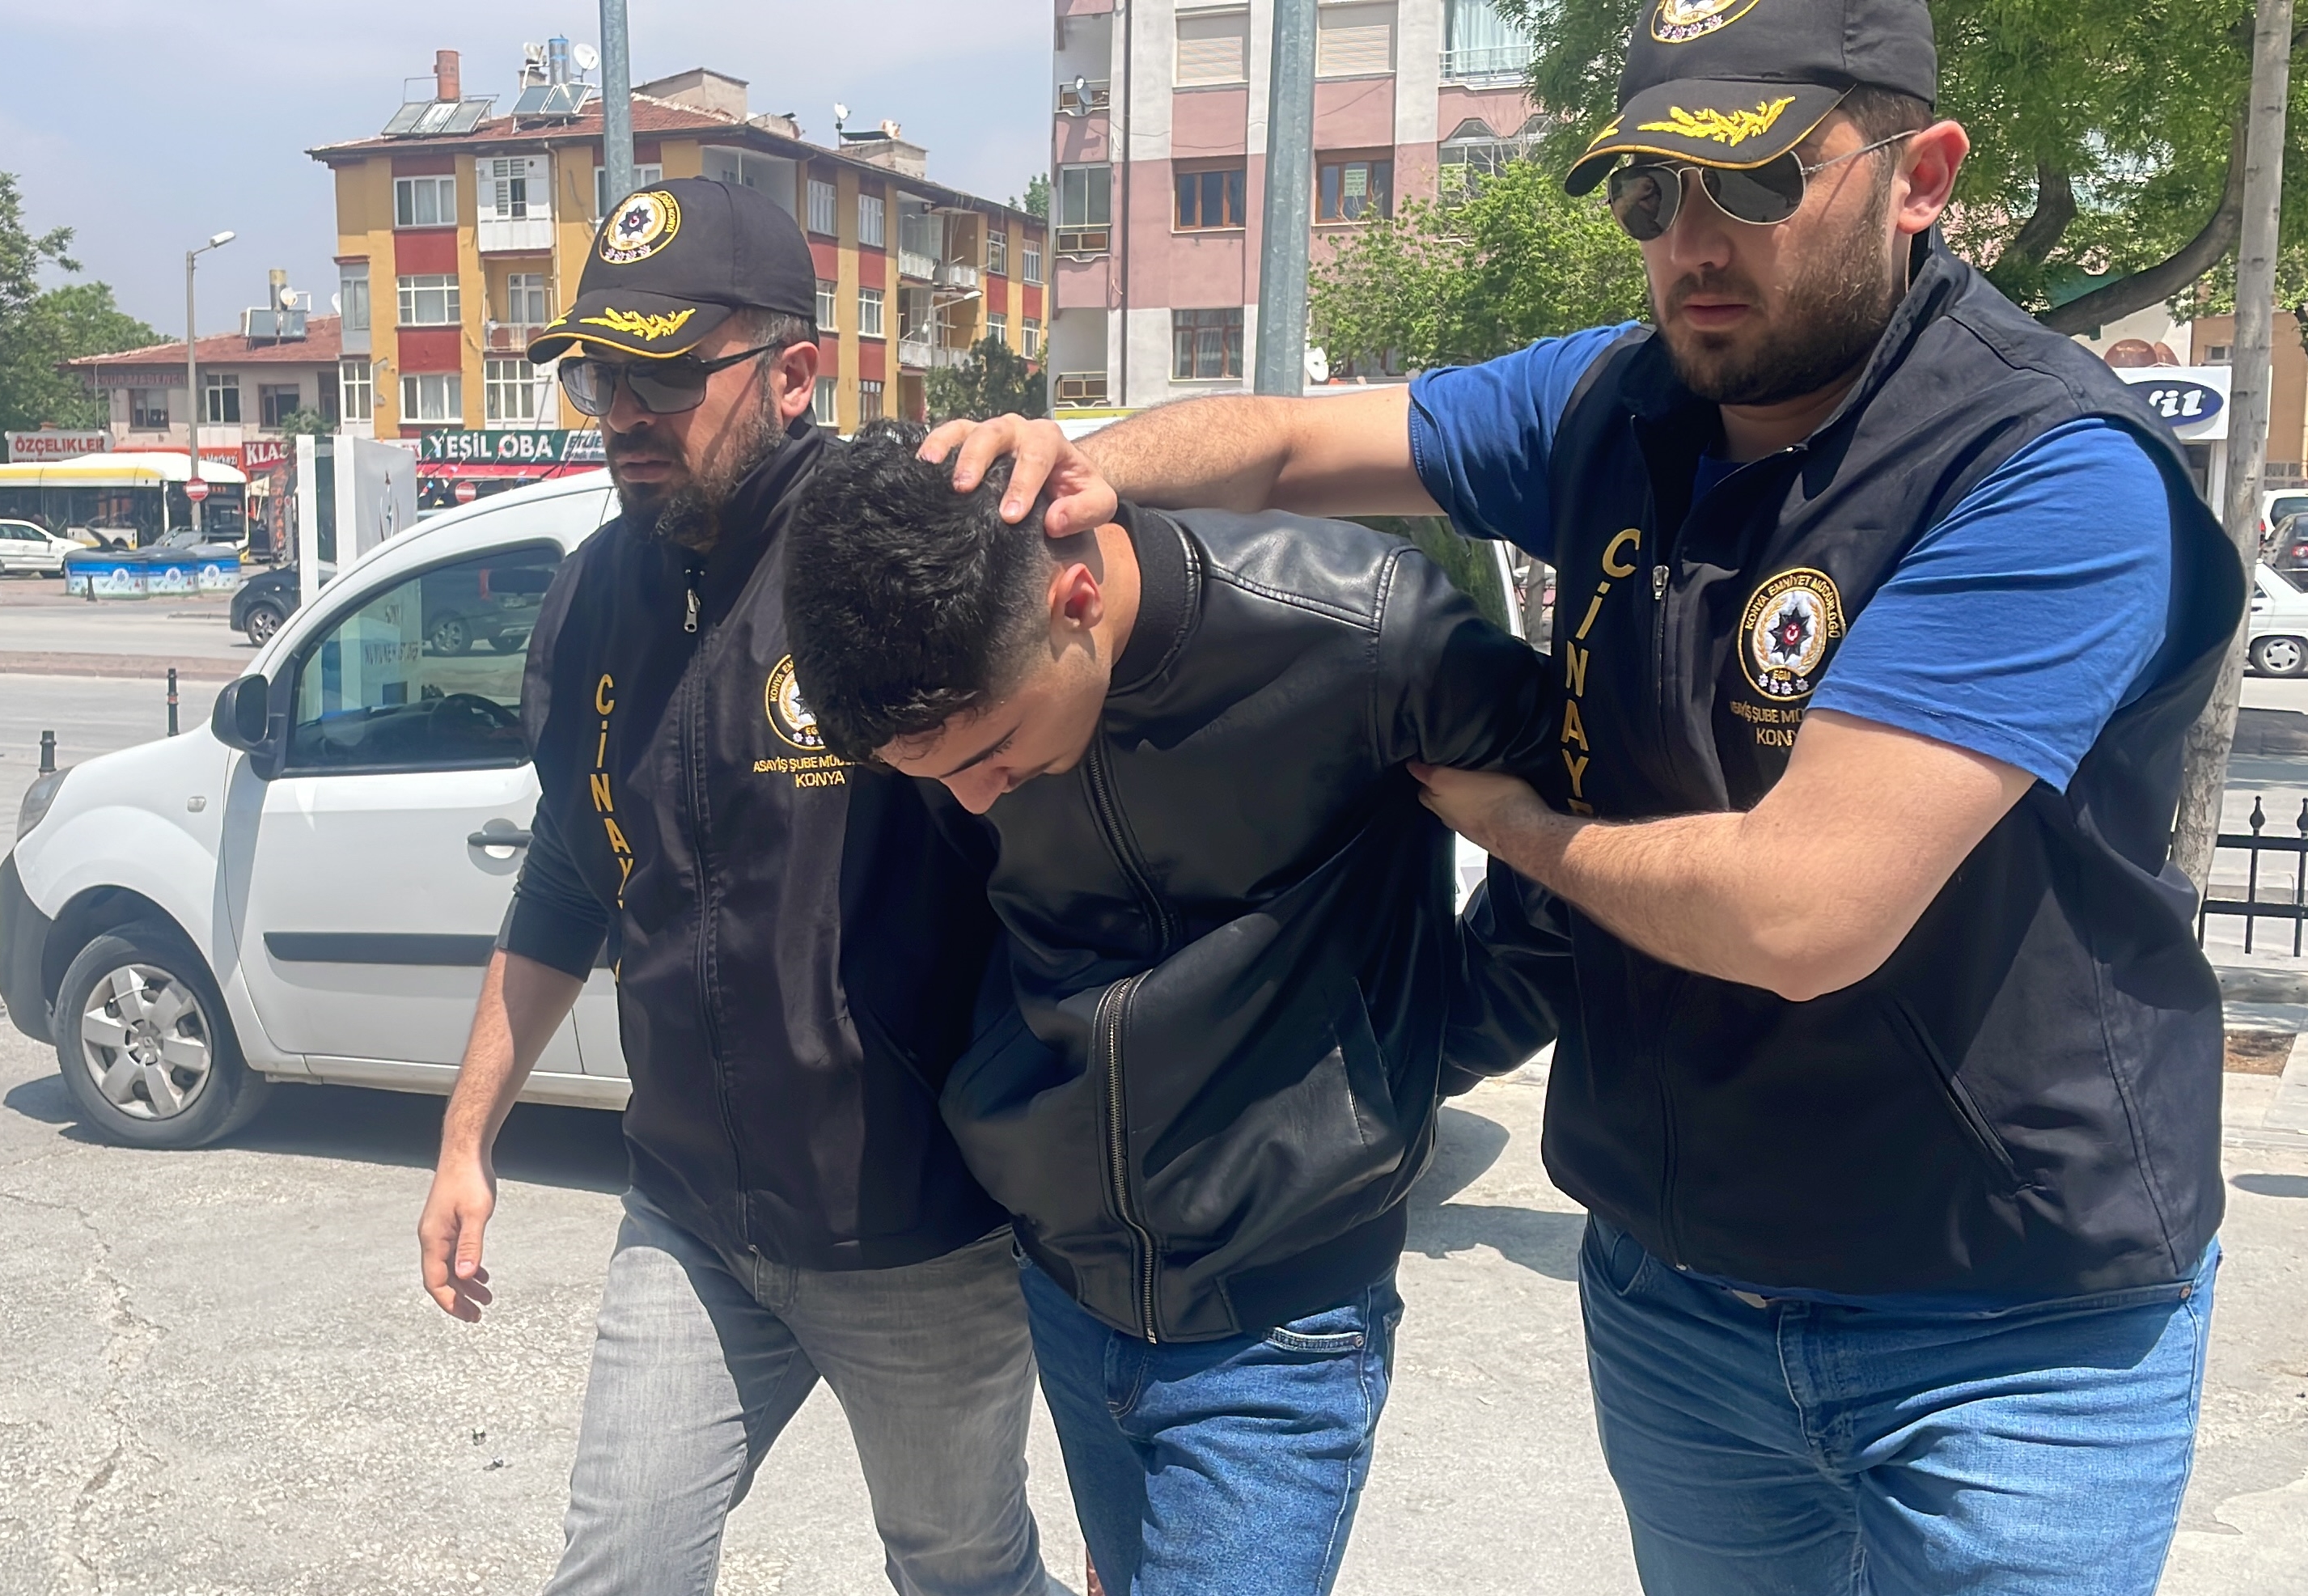 Konya'da bıçaklı kavga: 1 ölü